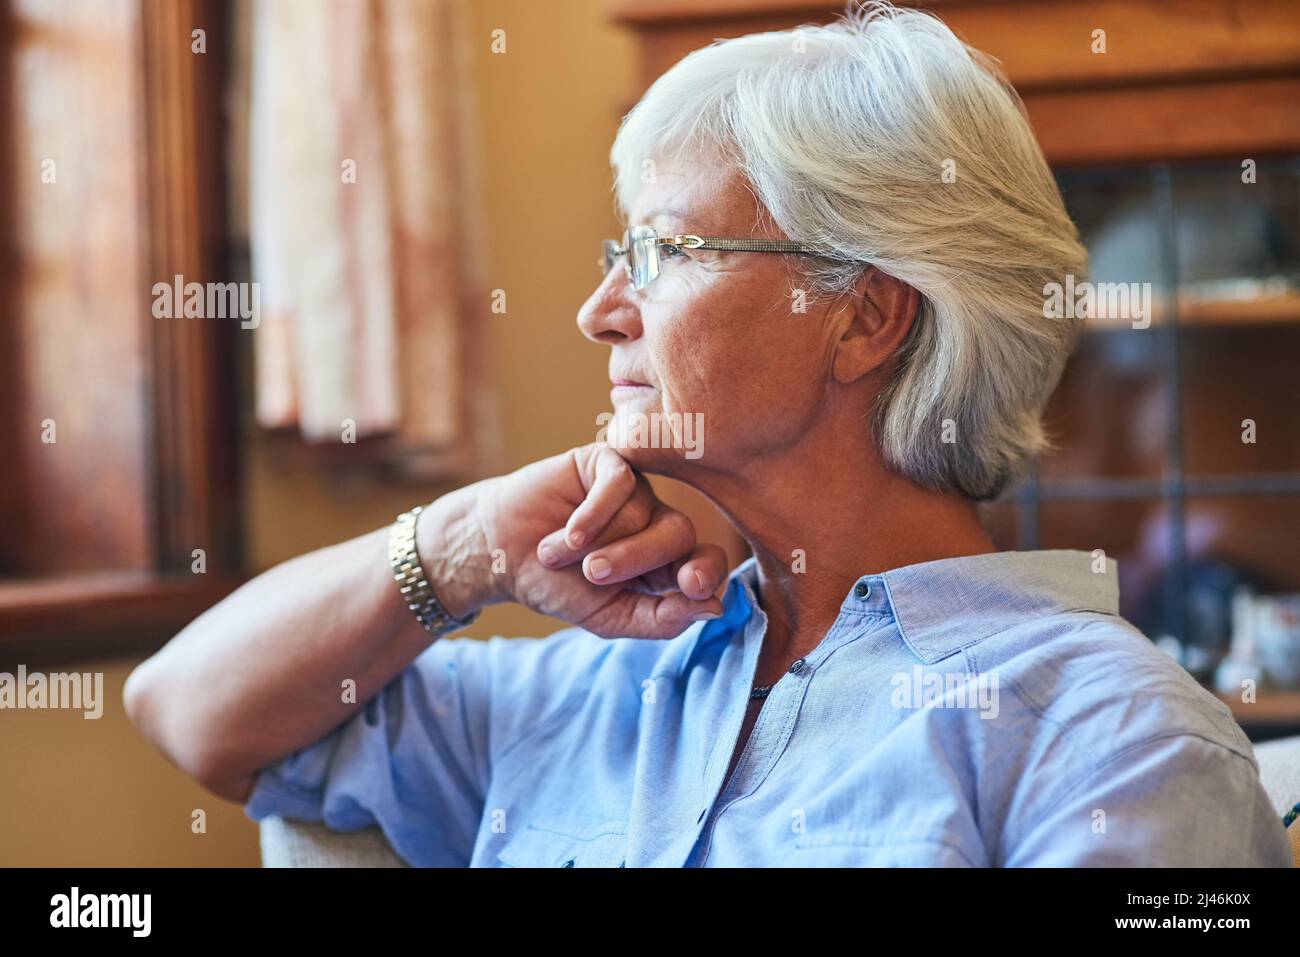 Über die vergangenen Jahre nachdenken. Eine kurze Aufnahme einer älteren Frau, die zu Hause nachdenklich aussieht. Stockfoto